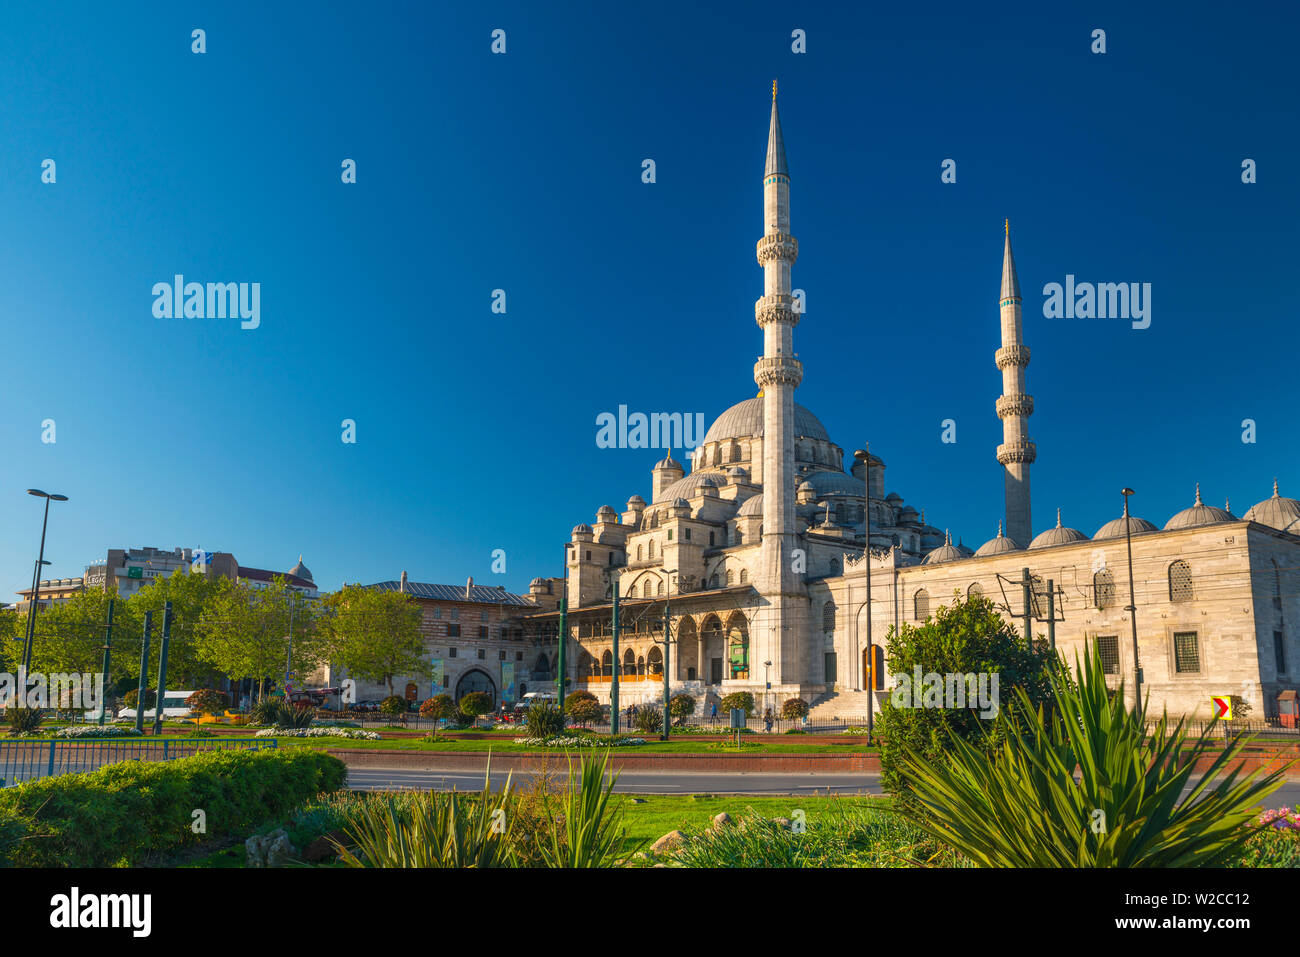 La Turquie, Istanbul, Sultanahmet, nouvelle mosquée (Yeni Camii) Banque D'Images